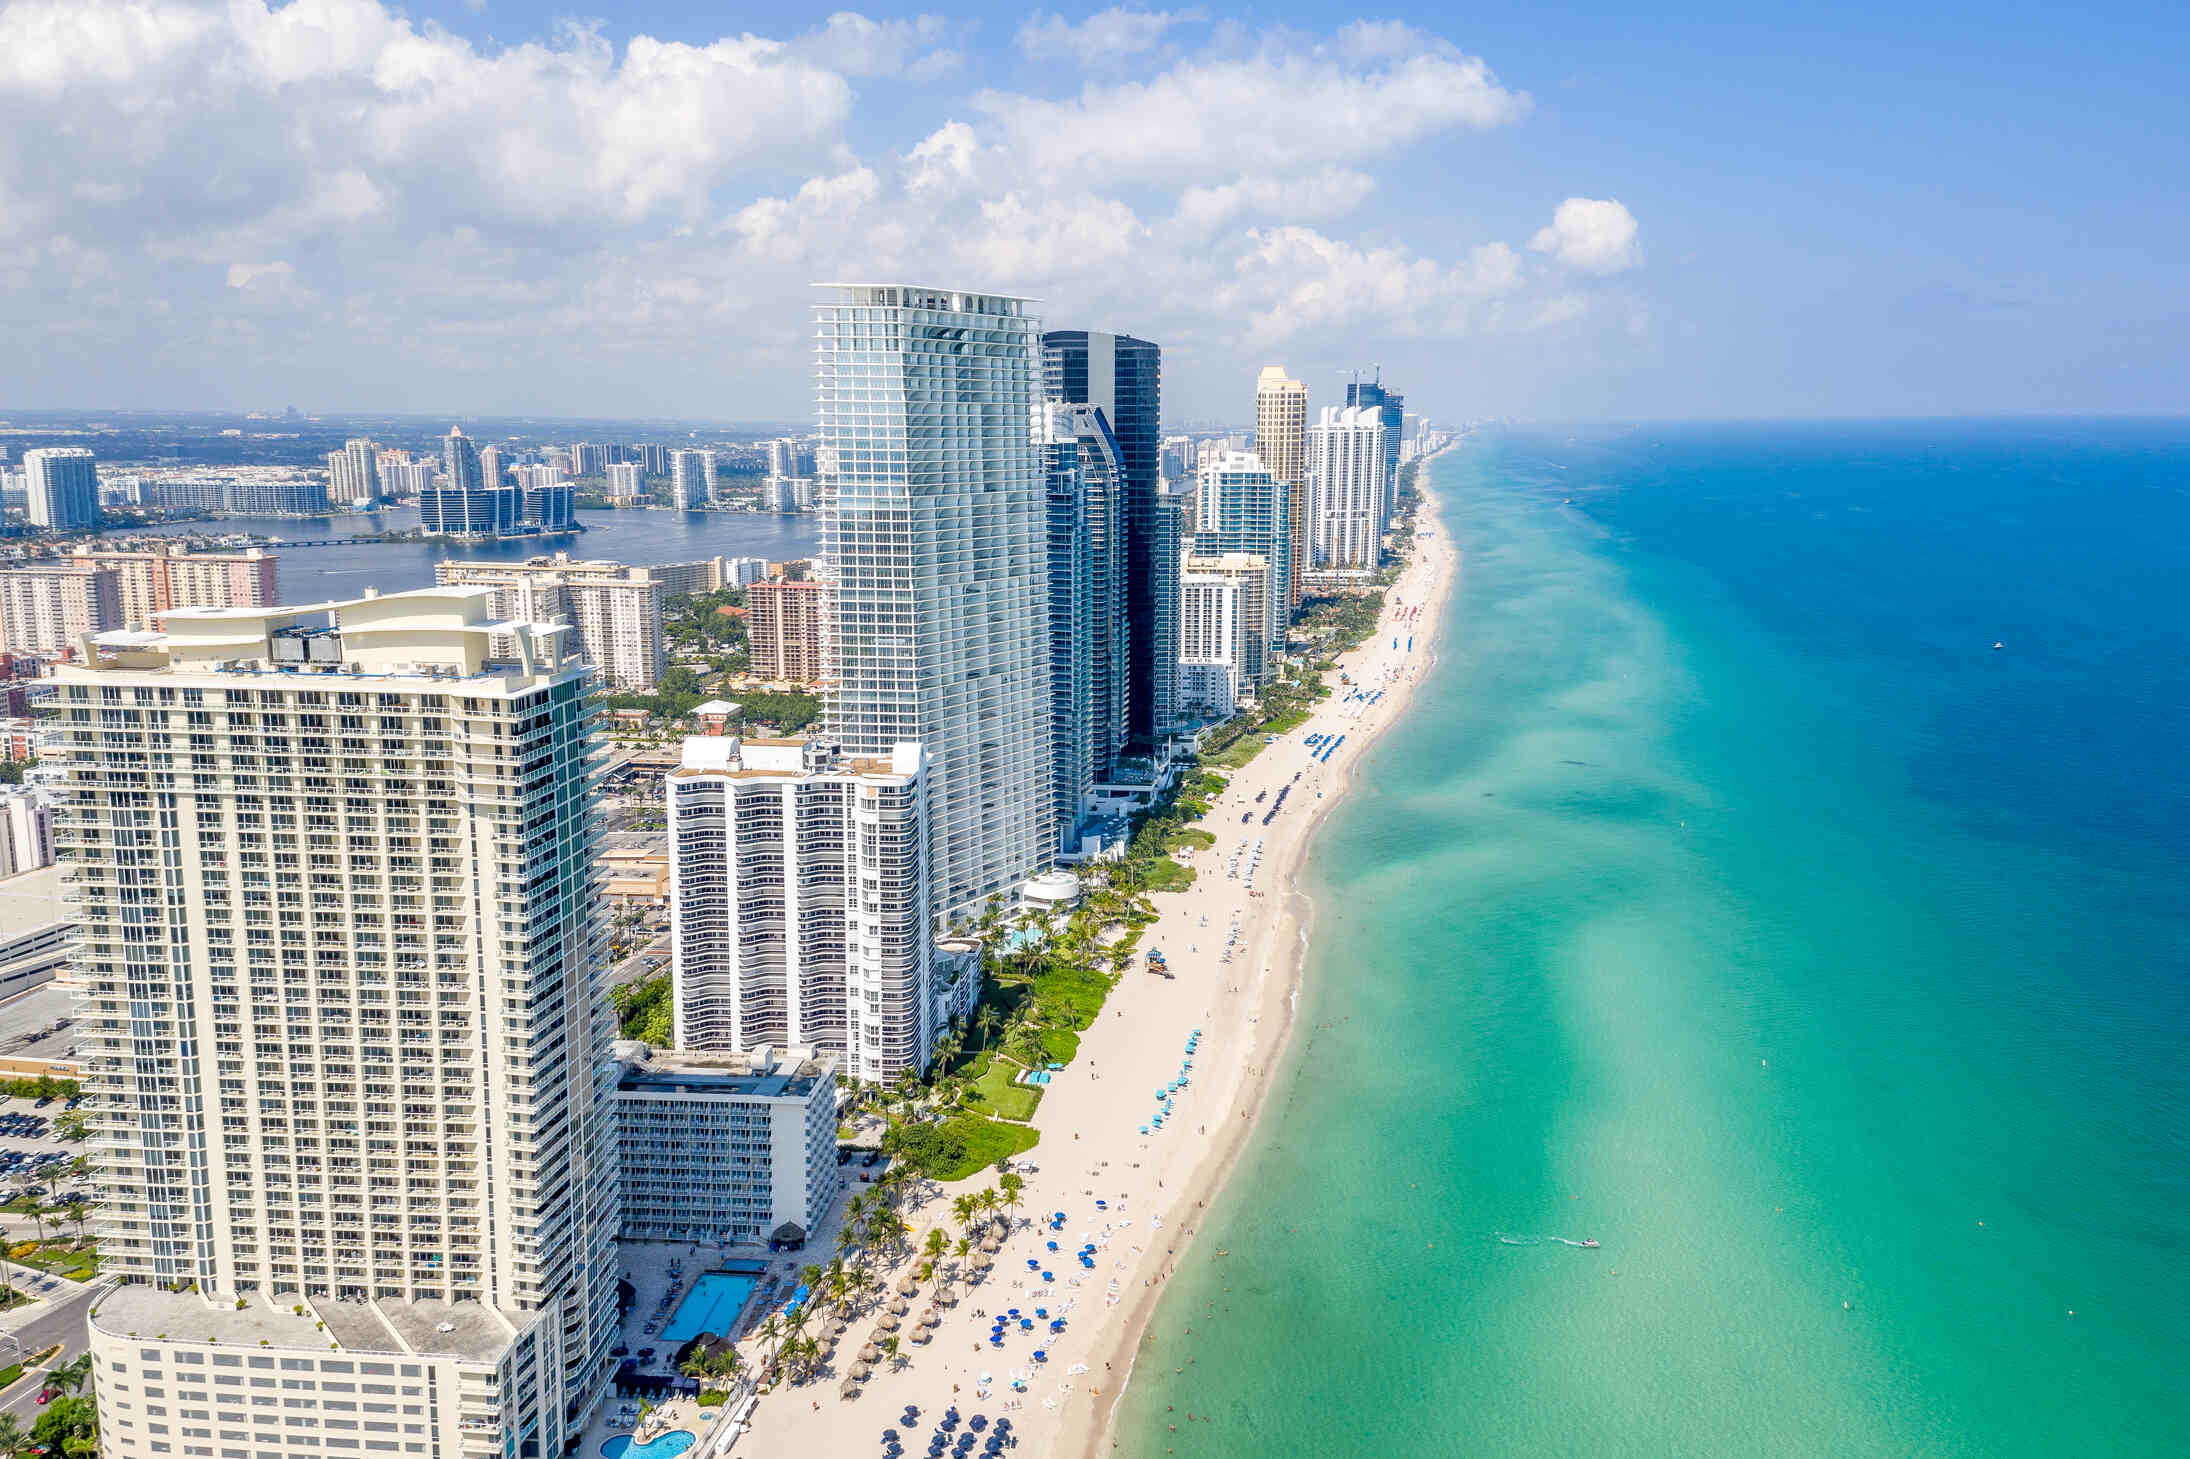 Comprar una propiedad en Miami a nombre propio o de una empresa